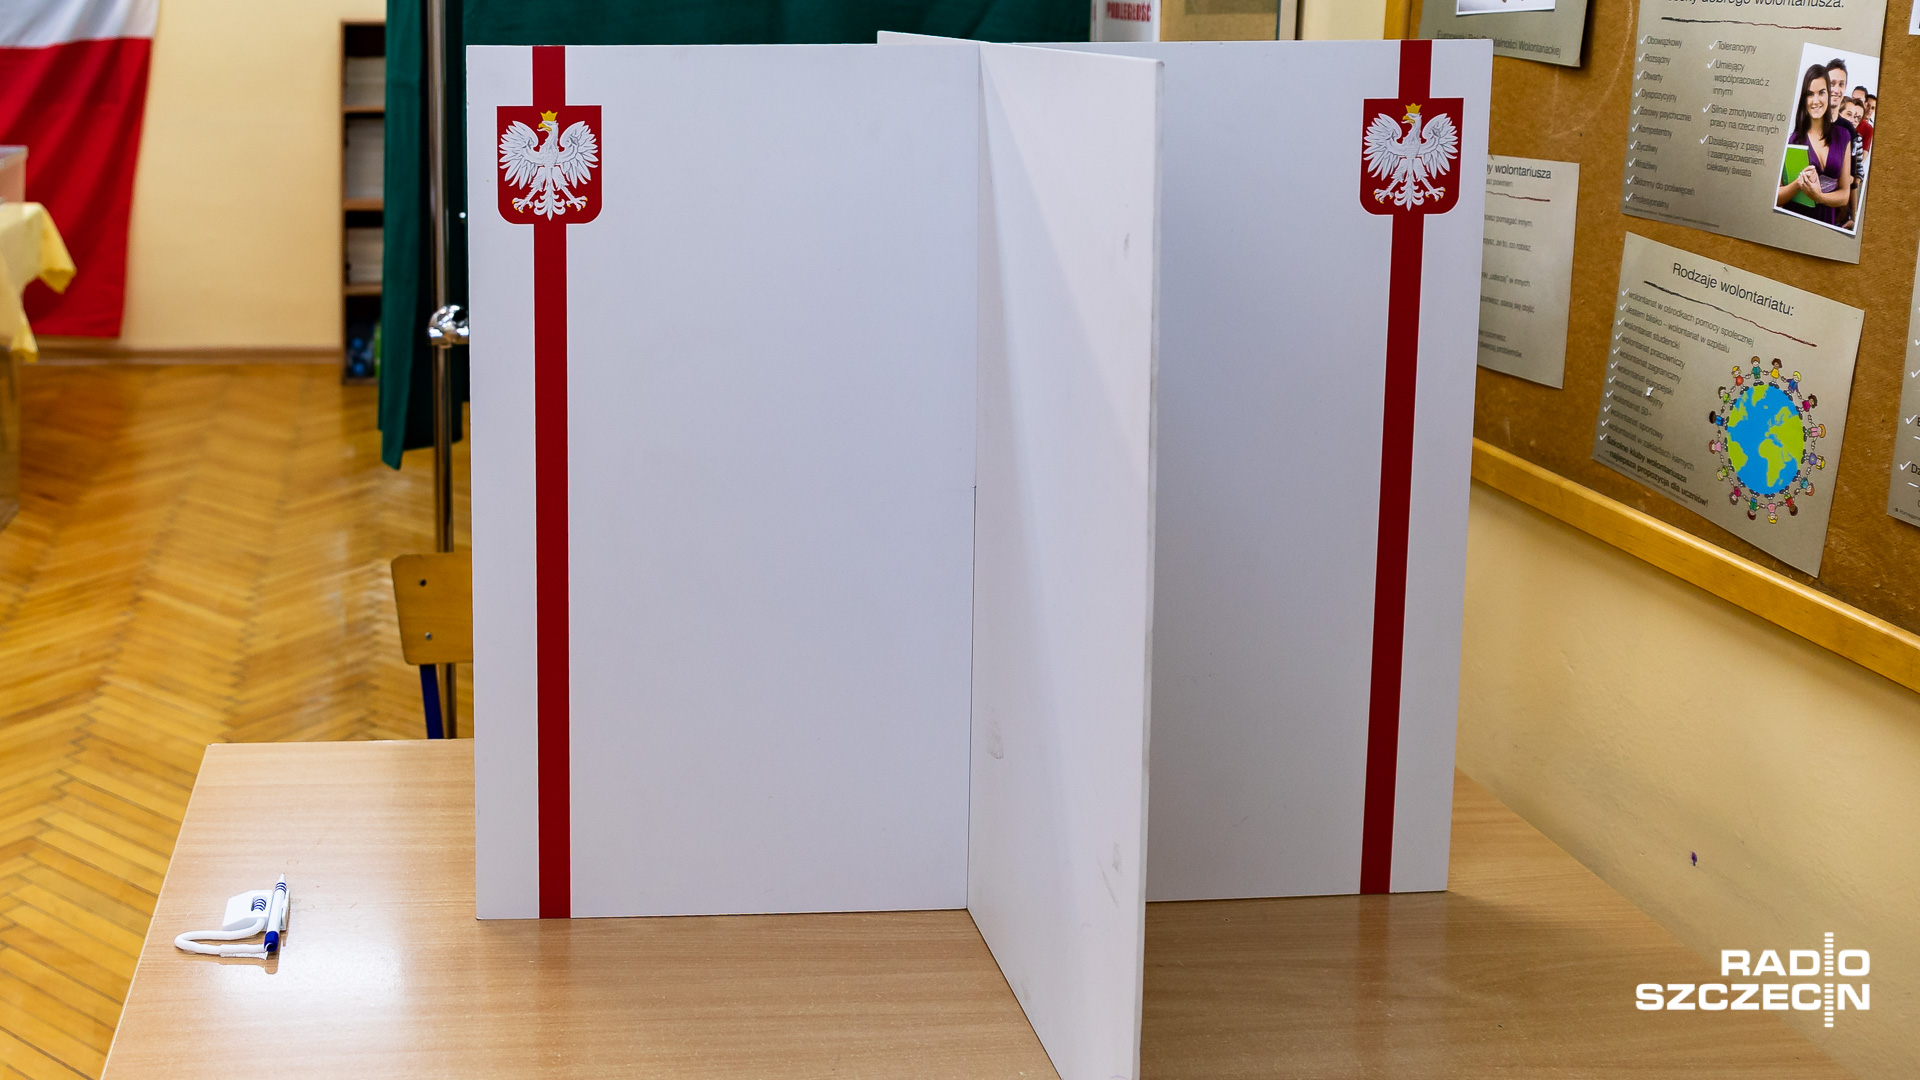 Marszałkowie Sejmu i Senatu o pracach nad przepisami wyborczymi